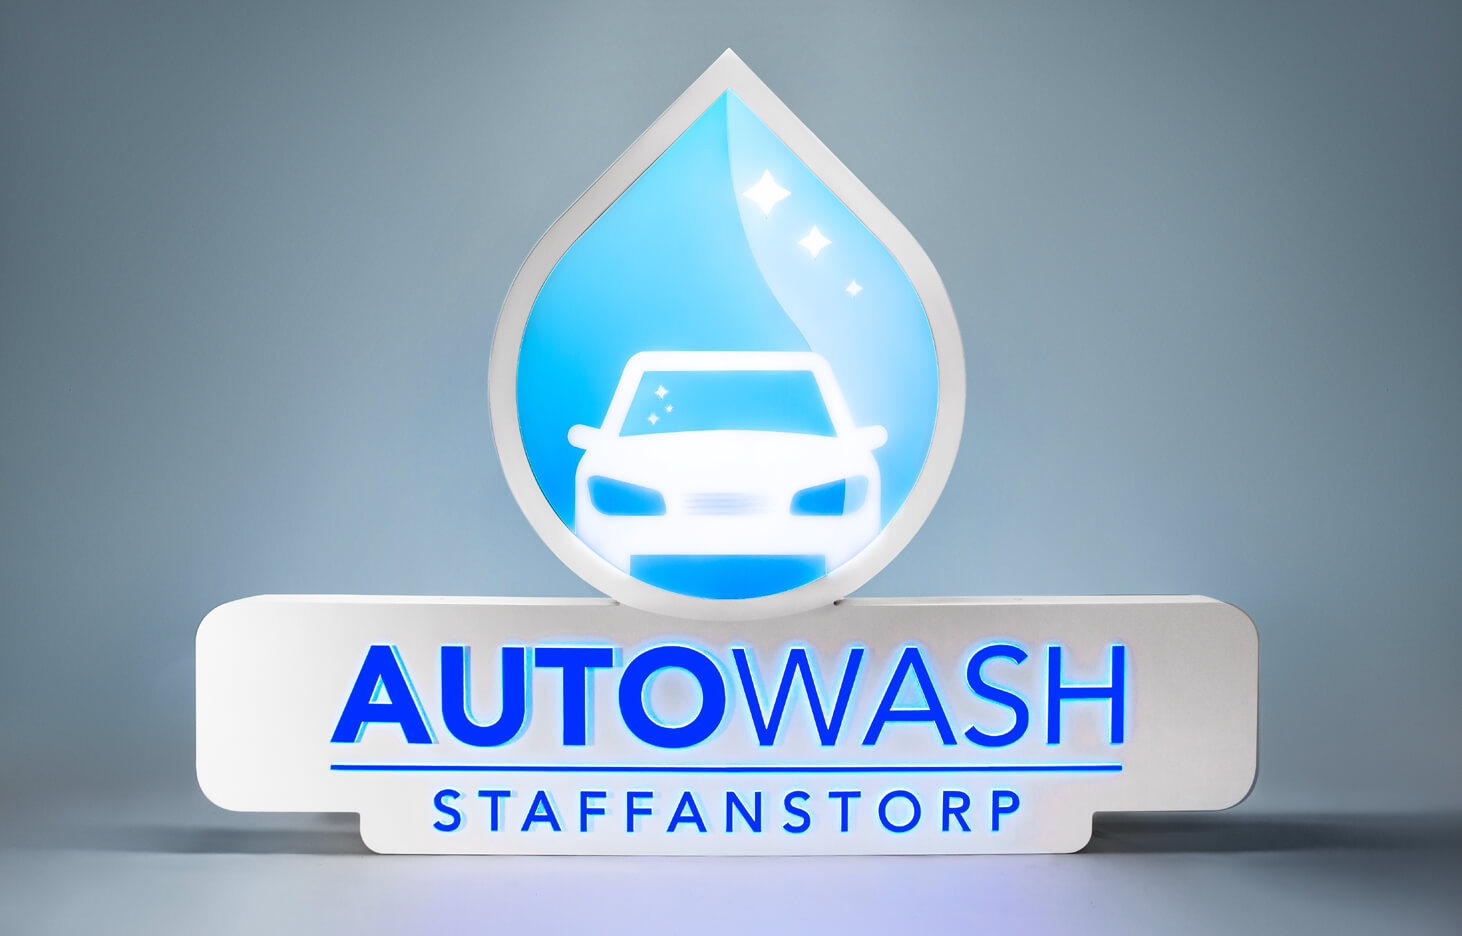 Autowash - Boîte à logo lumineuse pour Autowash